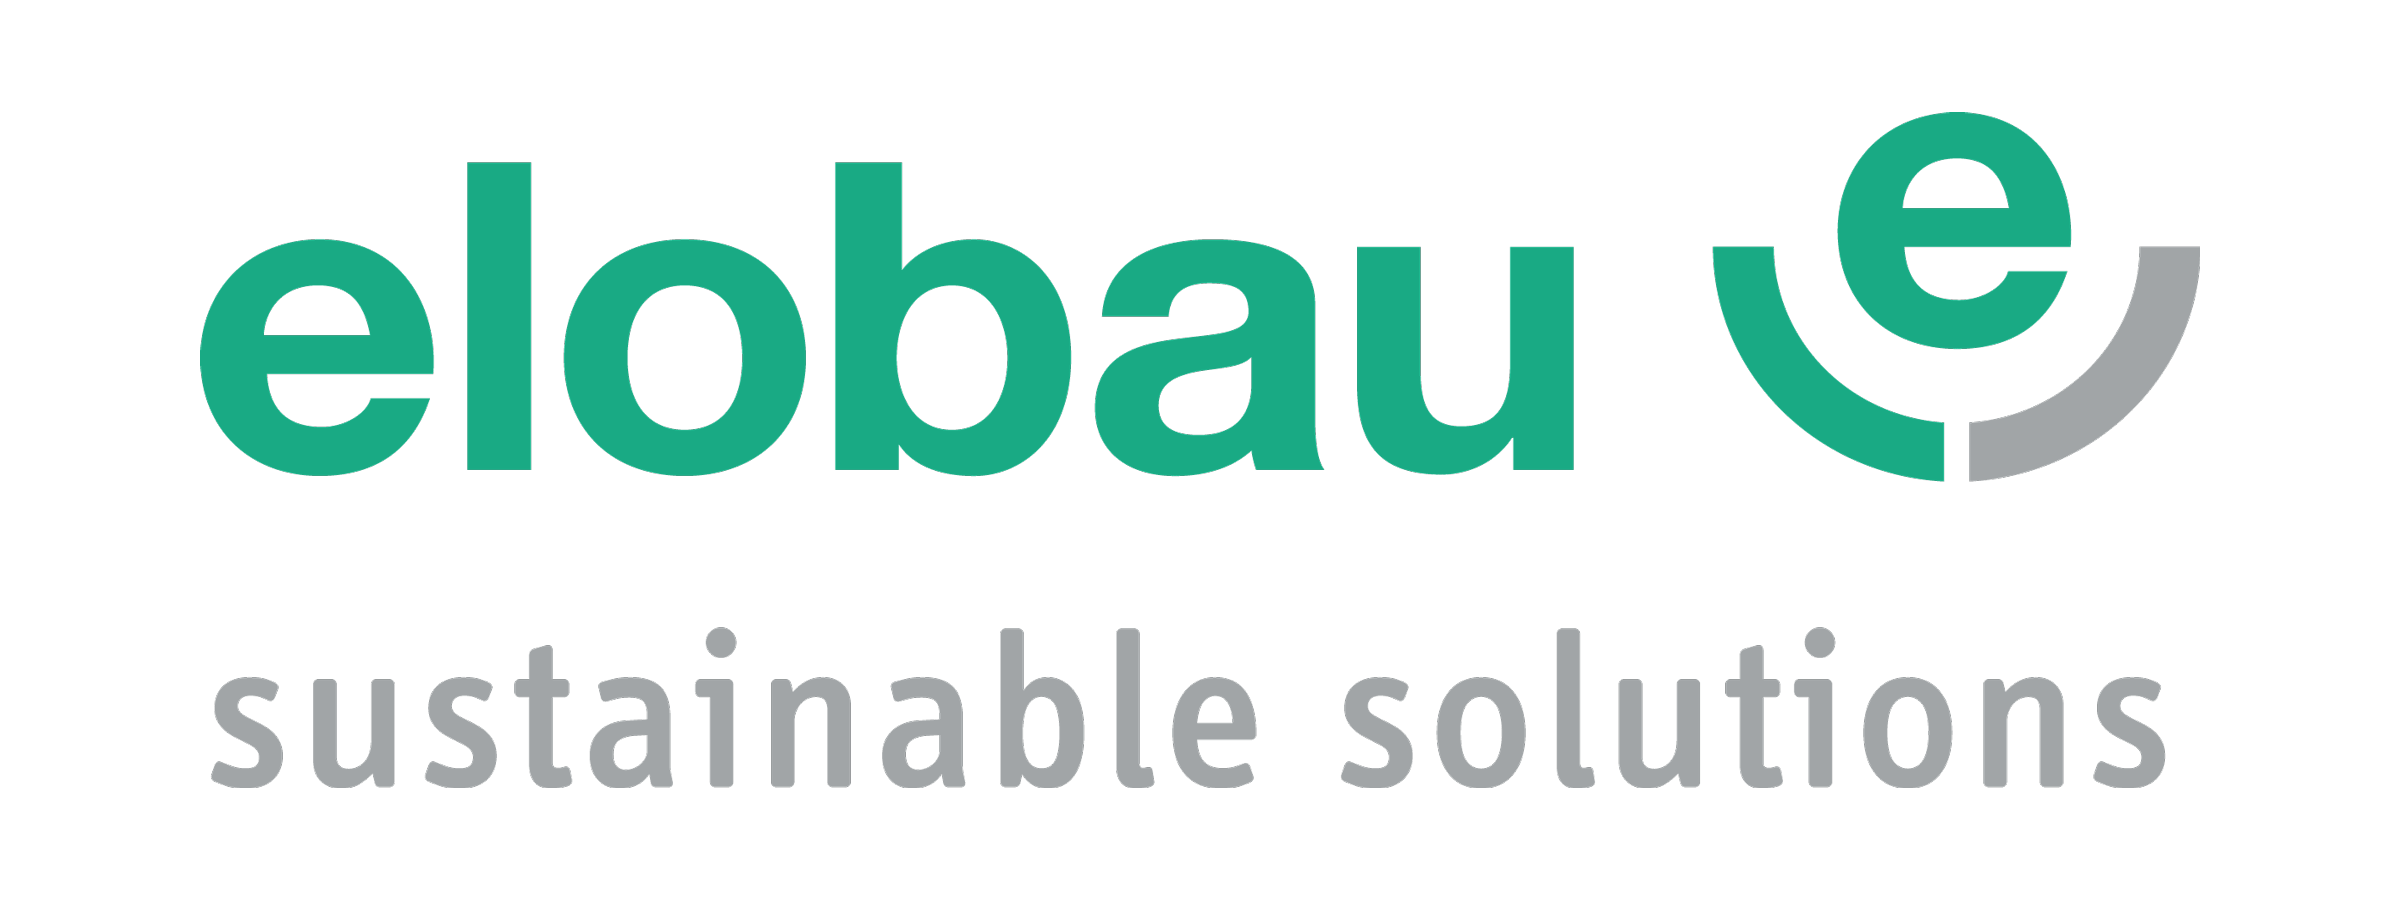 elobau_Logo_Claim_11_2020_RGB.png